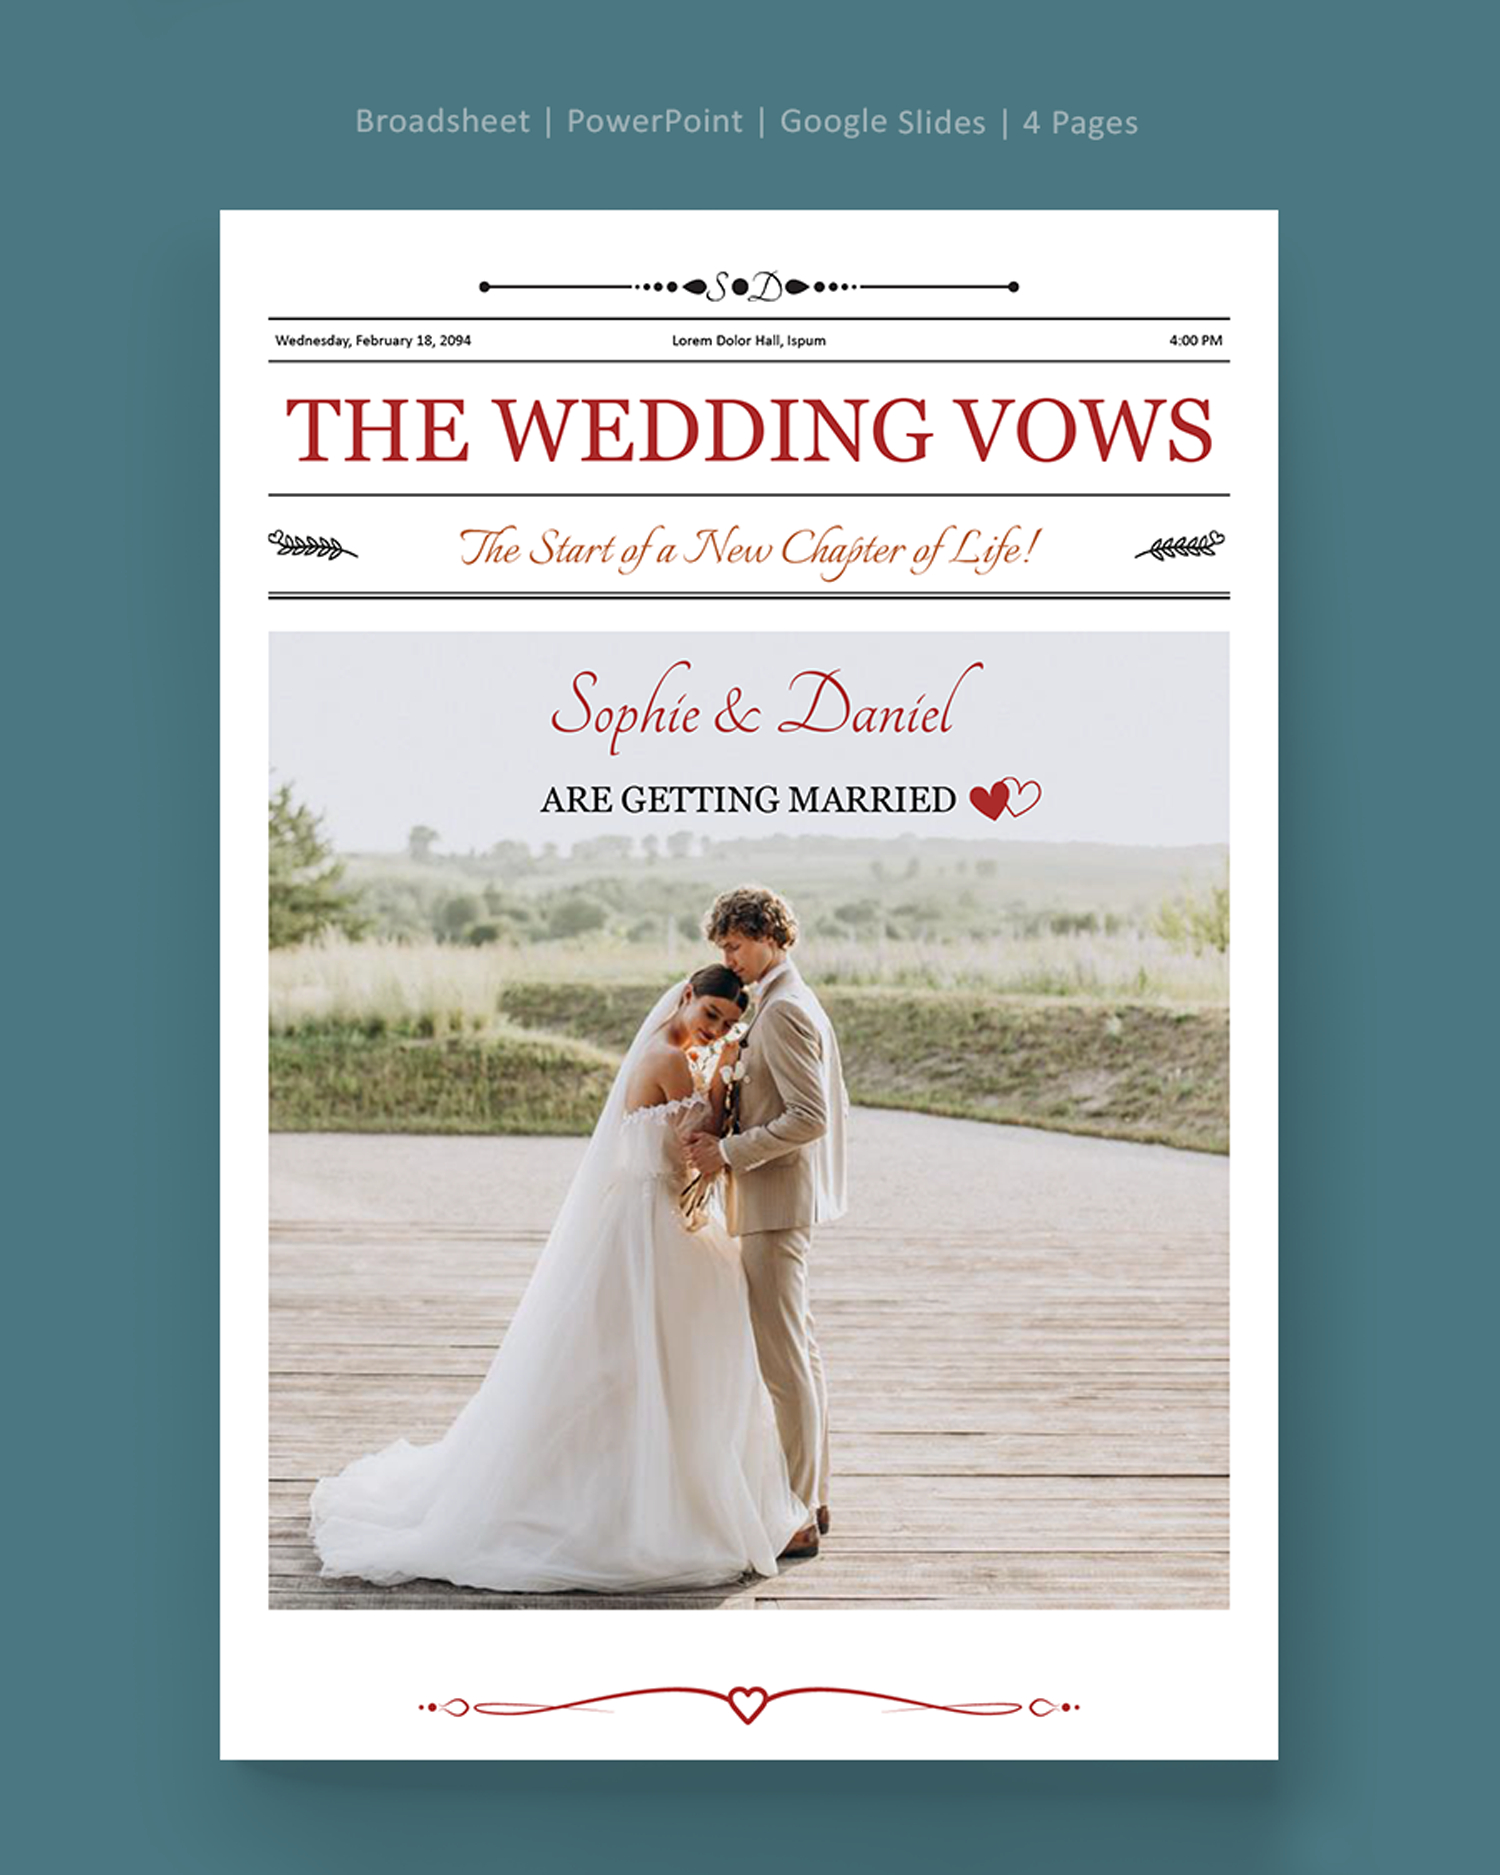 Broadsheet Wedding Newspaper Template - PowerPoint, Google Slides